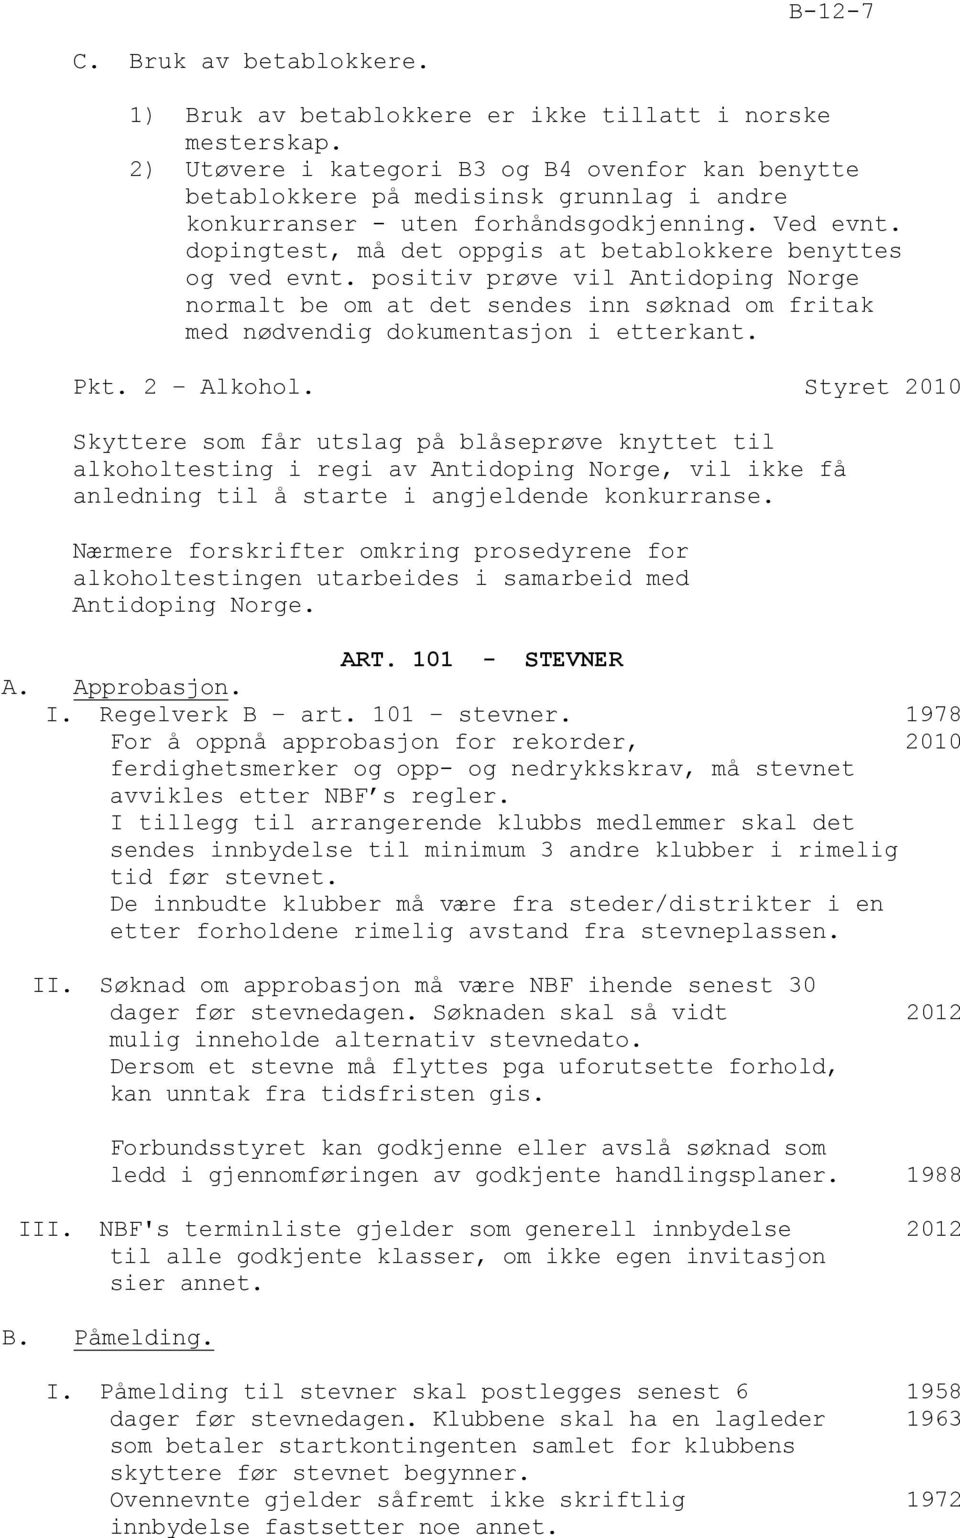 dopingtest, må det oppgis at betablokkere benyttes og ved evnt. positiv prøve vil Antidoping Norge normalt be om at det sendes inn søknad om fritak med nødvendig dokumentasjon i etterkant. Pkt.